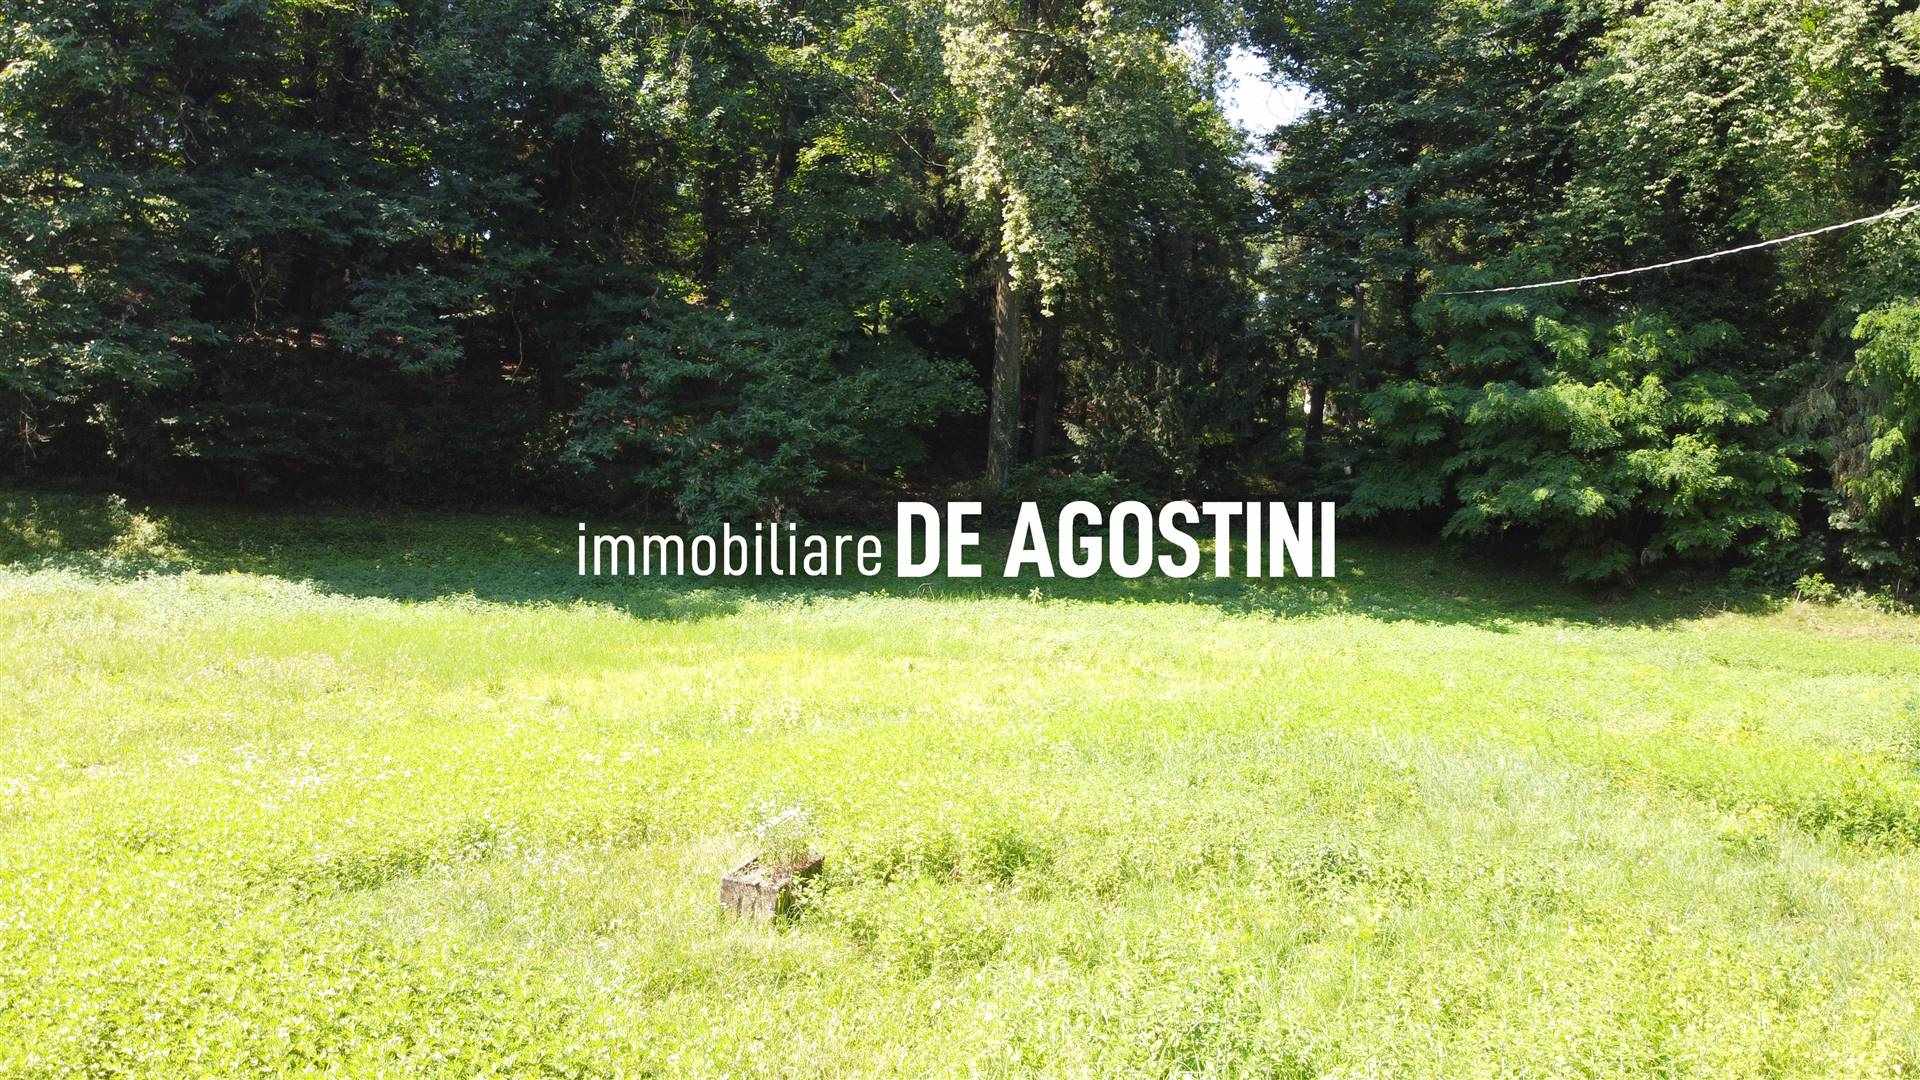 Terreno Edificabile Residenziale in vendita a Oleggio Castello, 9999 locali, prezzo € 160.000 | CambioCasa.it